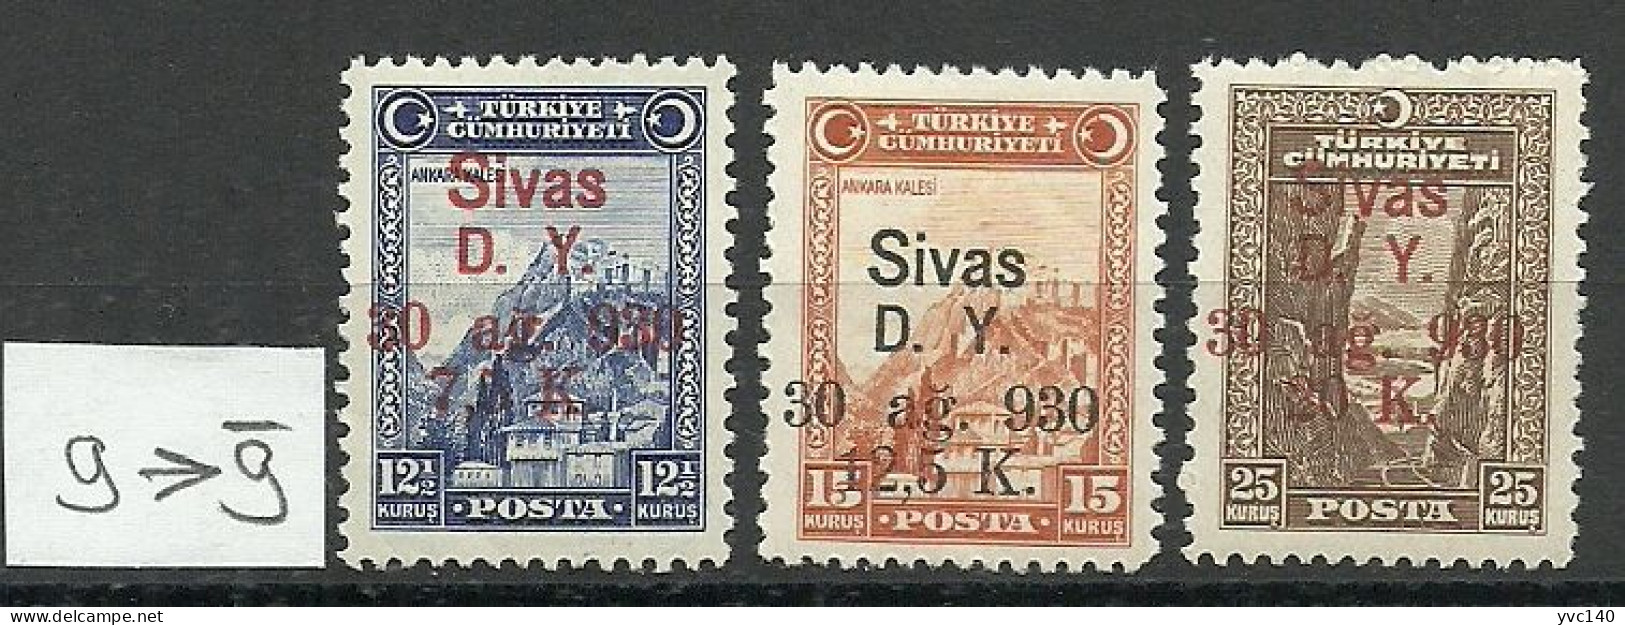 Turkey; 1930 Ankara-Sivas Railway Stamps ERROR "ğ" Instead Of "g" MH* - Ungebraucht